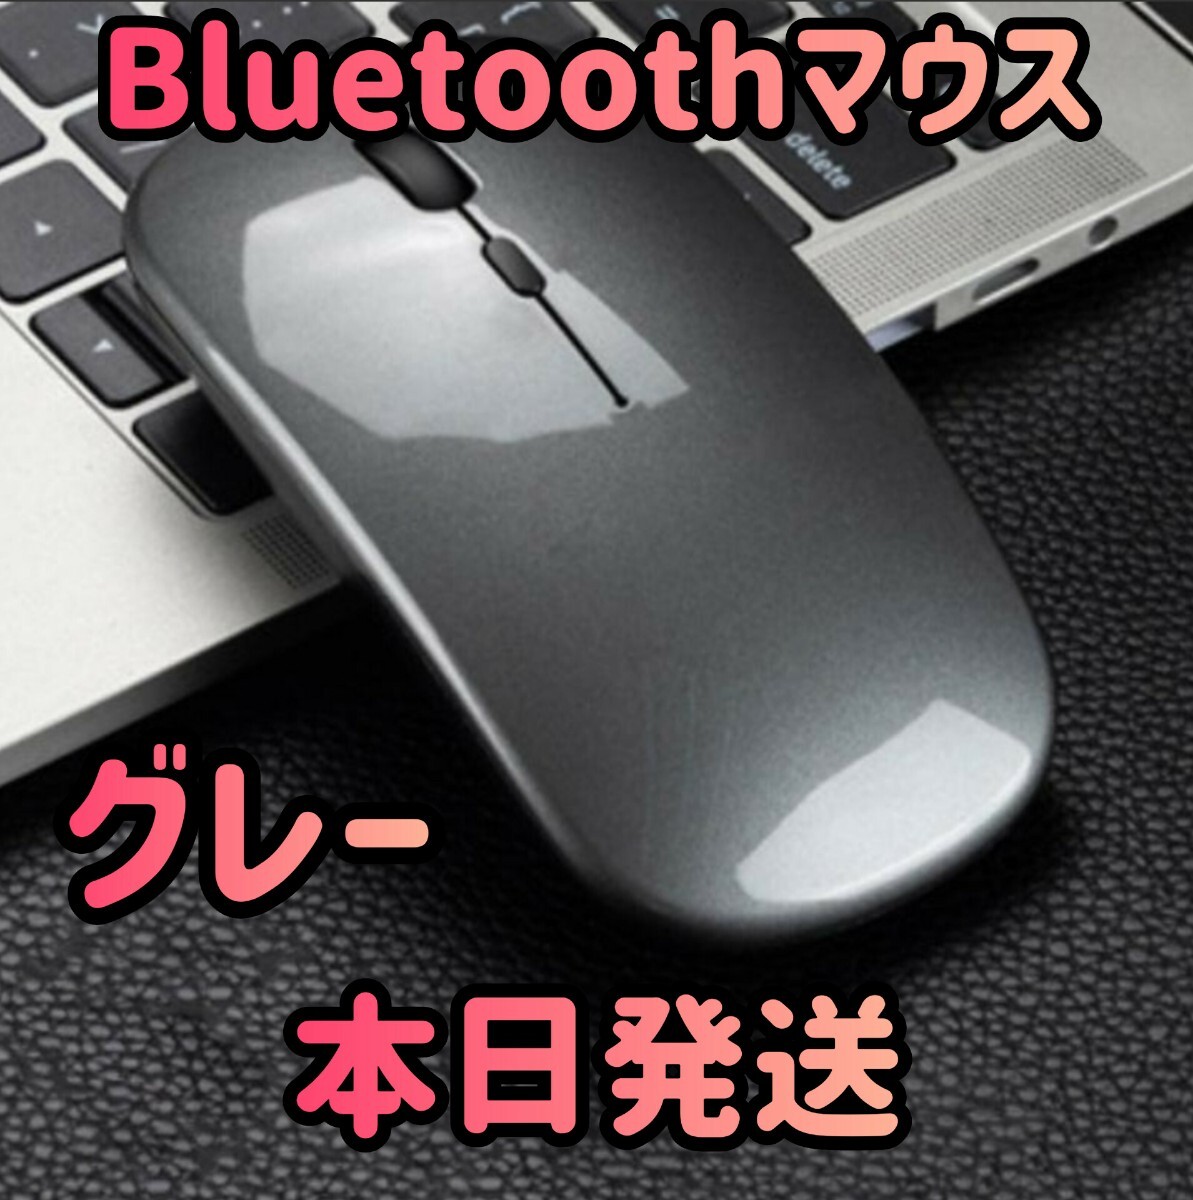  беспроводная мышь серый Bluetooth мышь мышь Bluetooth5.1 супер тонкий тихий звук 2.4G мышь персональный компьютер беспроводной мышь коврик для мыши ge-ming